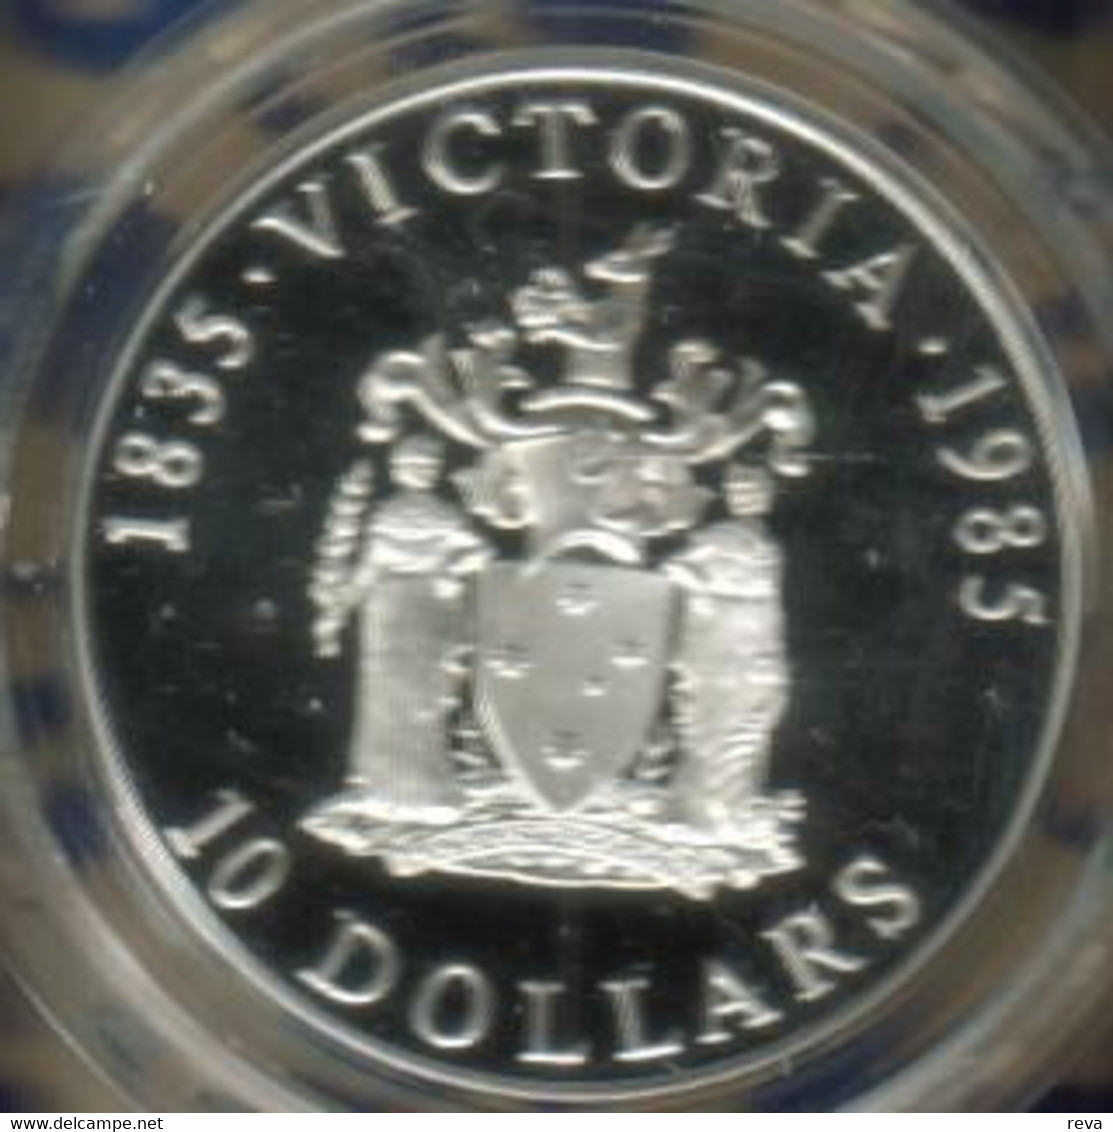 AUSTRALIA $10 STATE SERIES VICTORIA 1985 SILVER UNC KM? READ DESCRIPTION CAREFULLY !!! - 10 Dollars